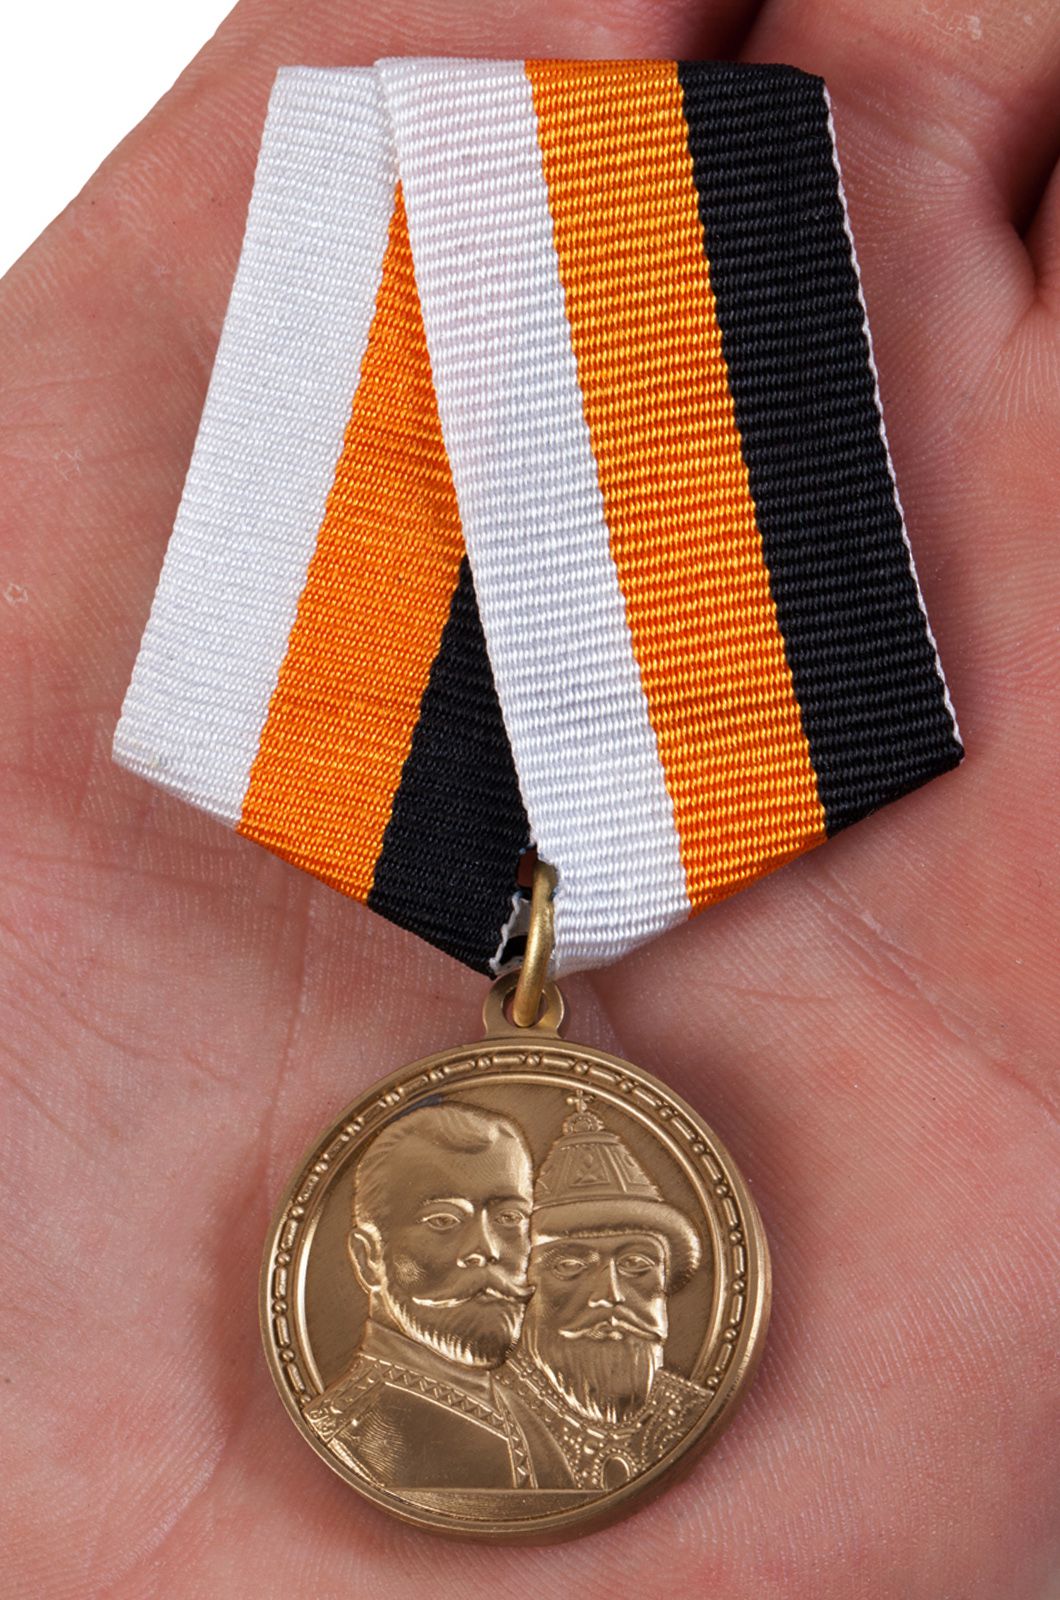 Медаль «В память 300-летия царствования дома Романовых» 